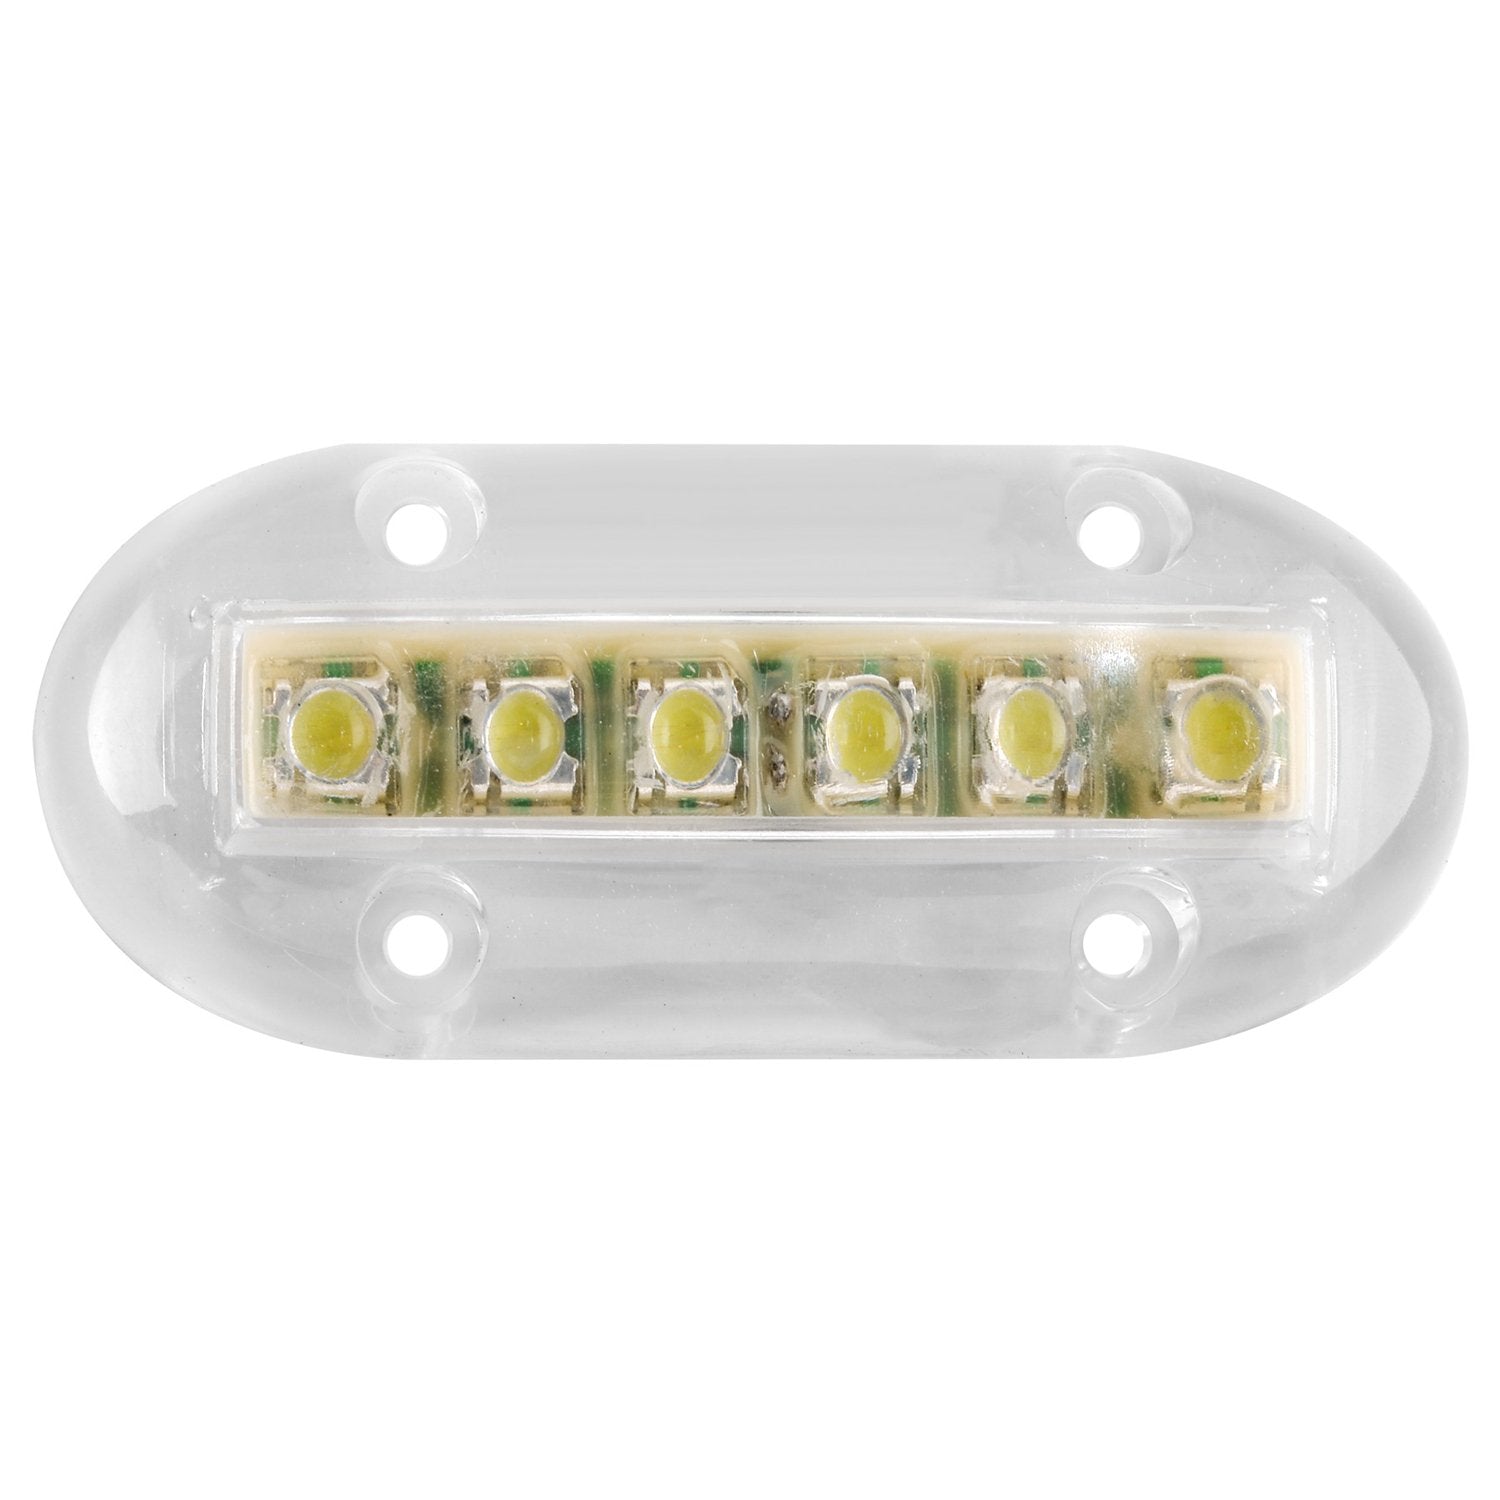 LED Underwater Light - White